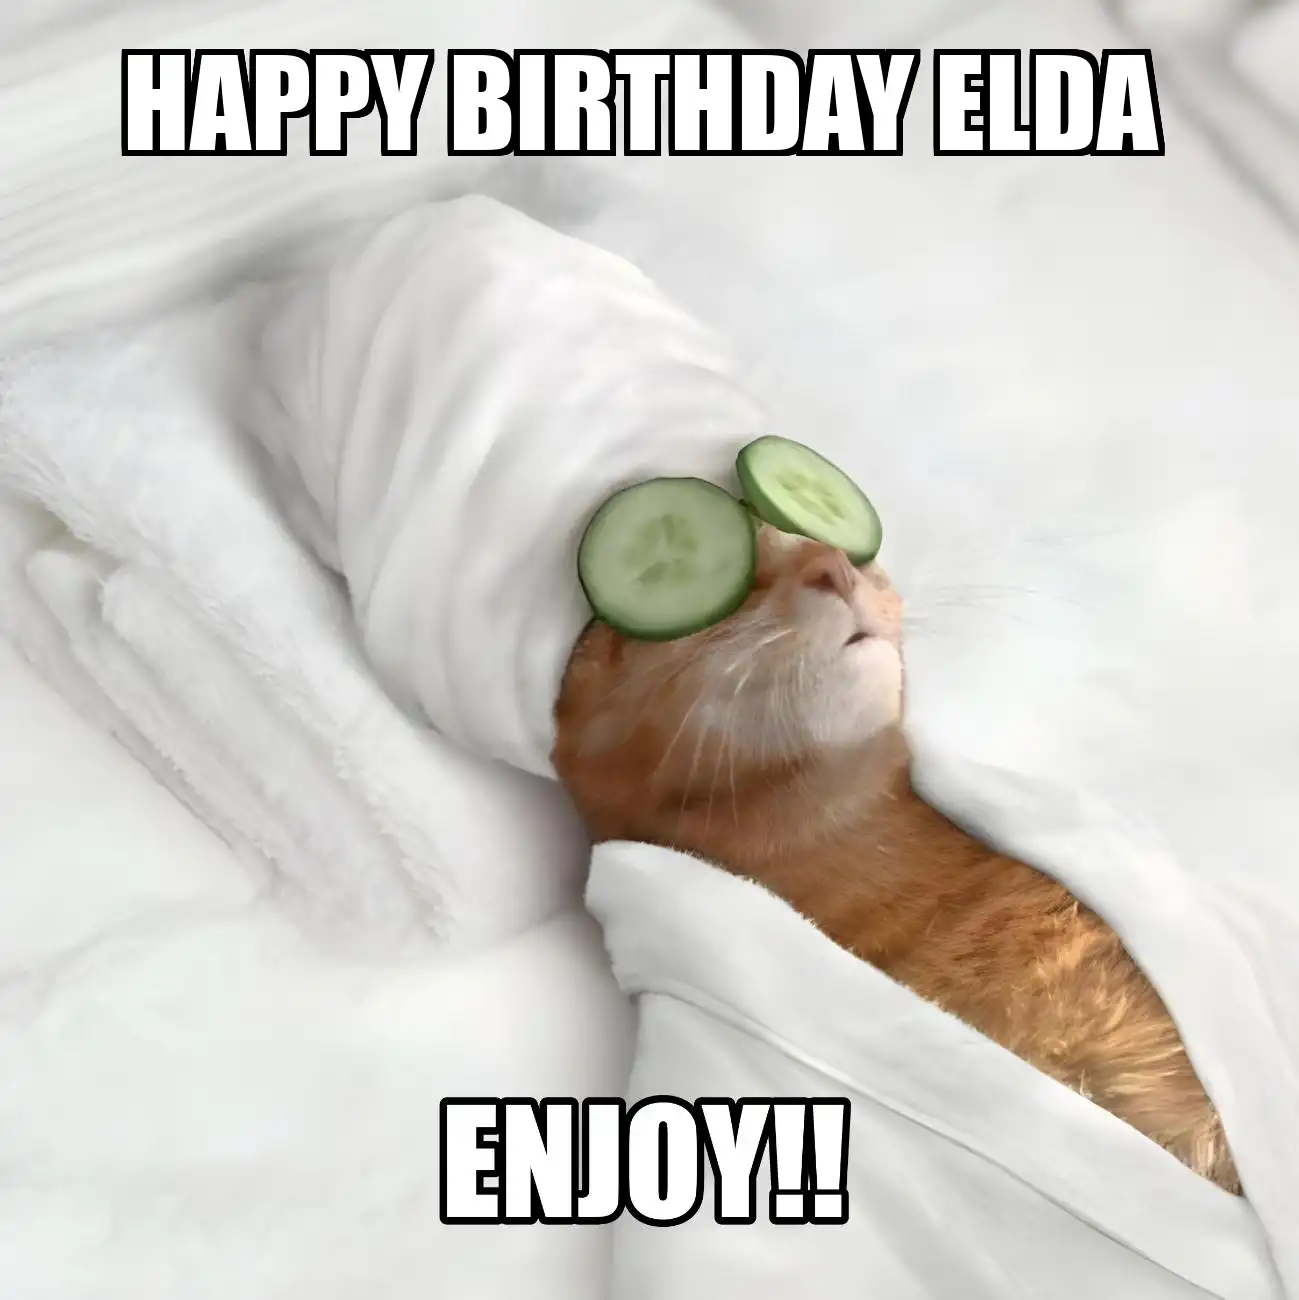 Happy Birthday Elda Enjoy Cat Meme